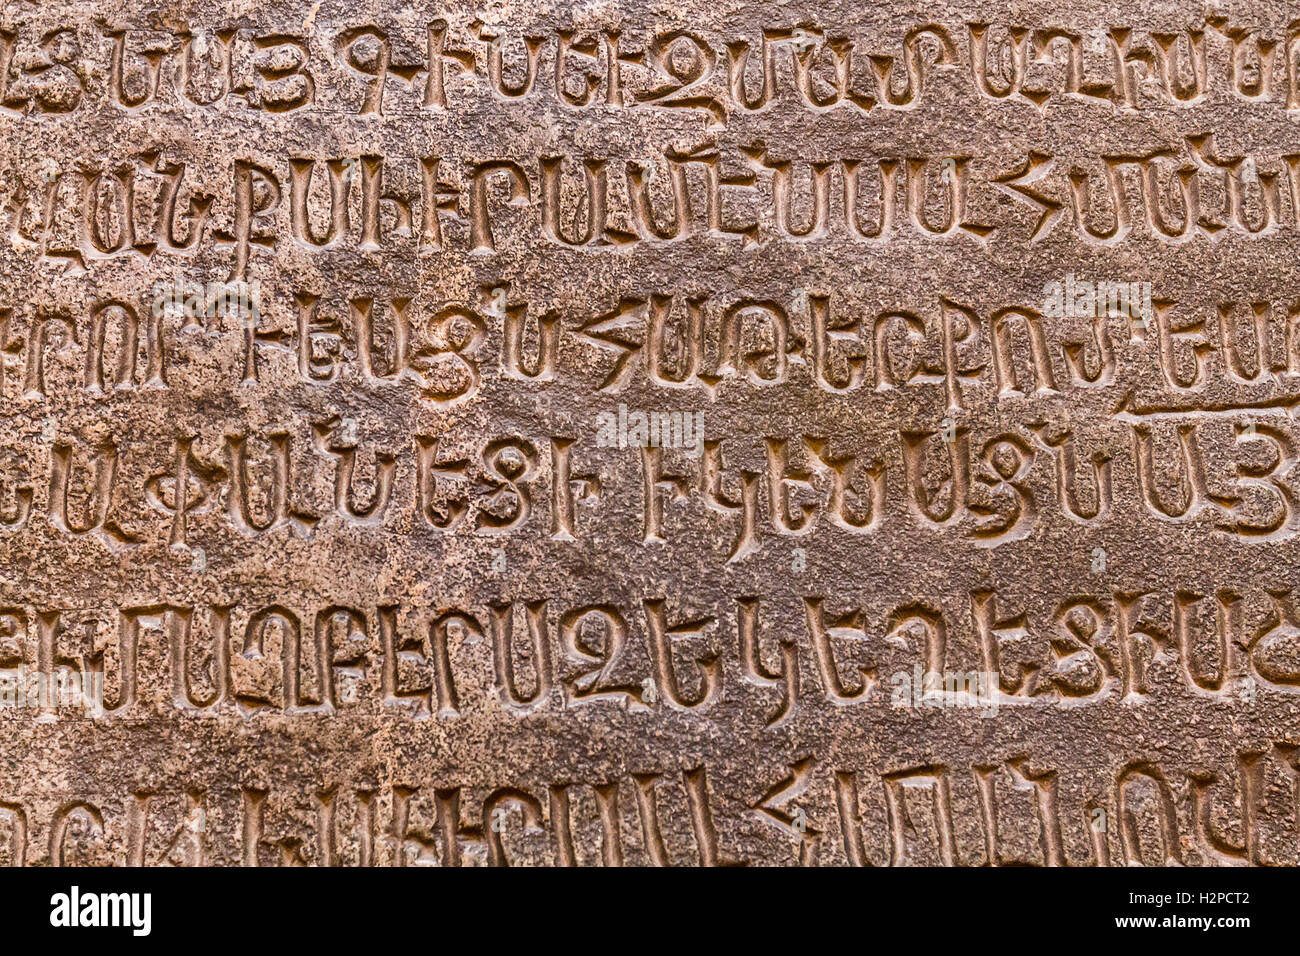 Armenian inscriptions in the Matenadaran Museum in Yerevan, Armenia. Stock Photo